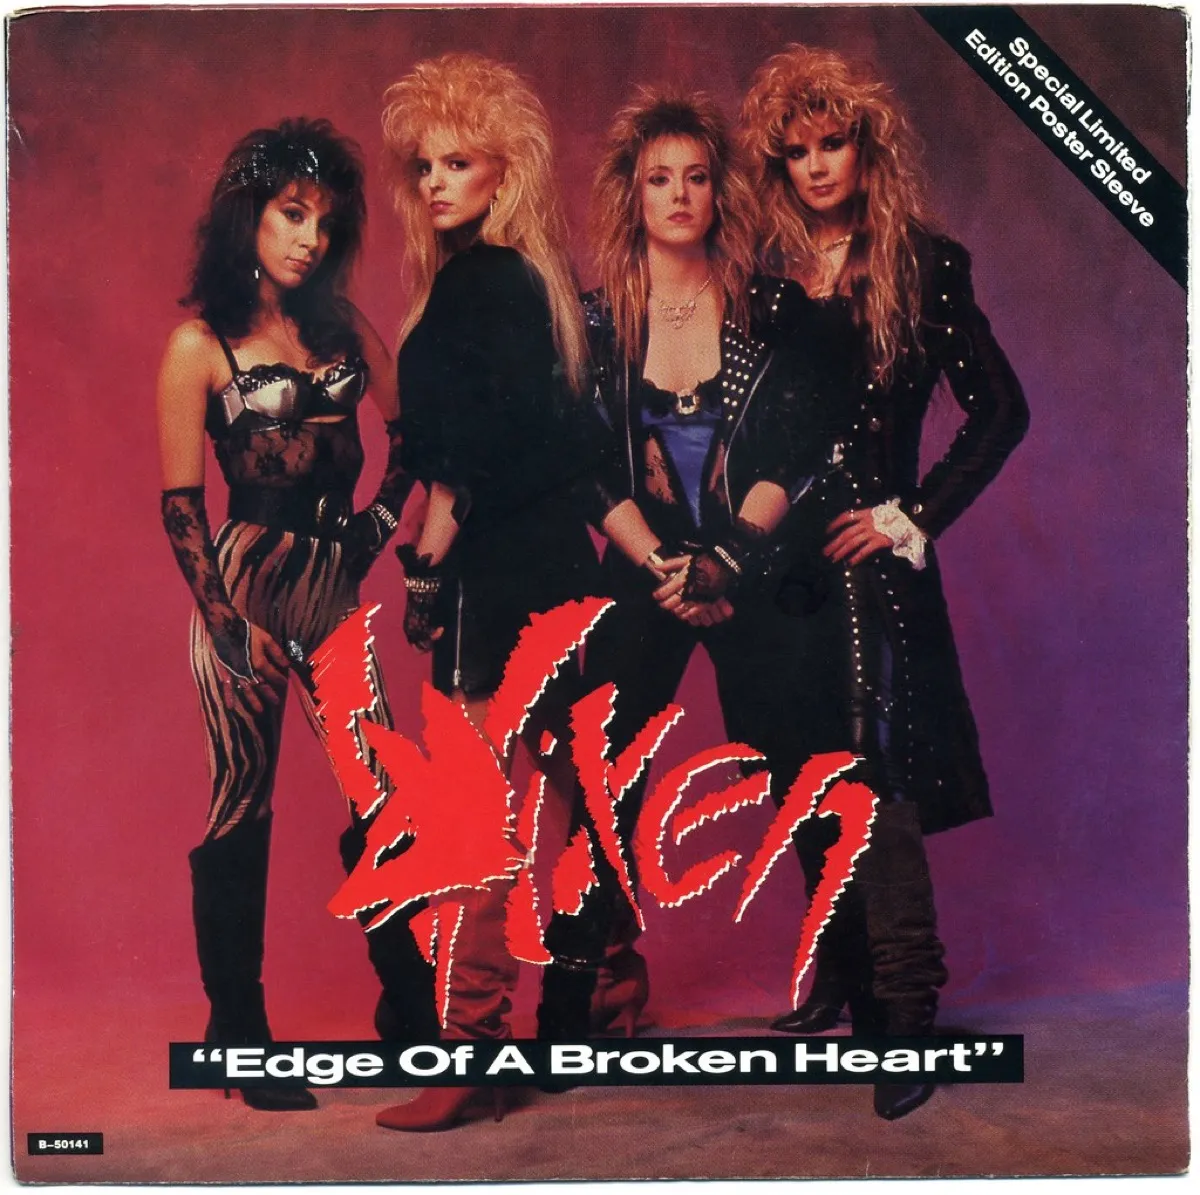 vixen "edge of a broken heart" album cover